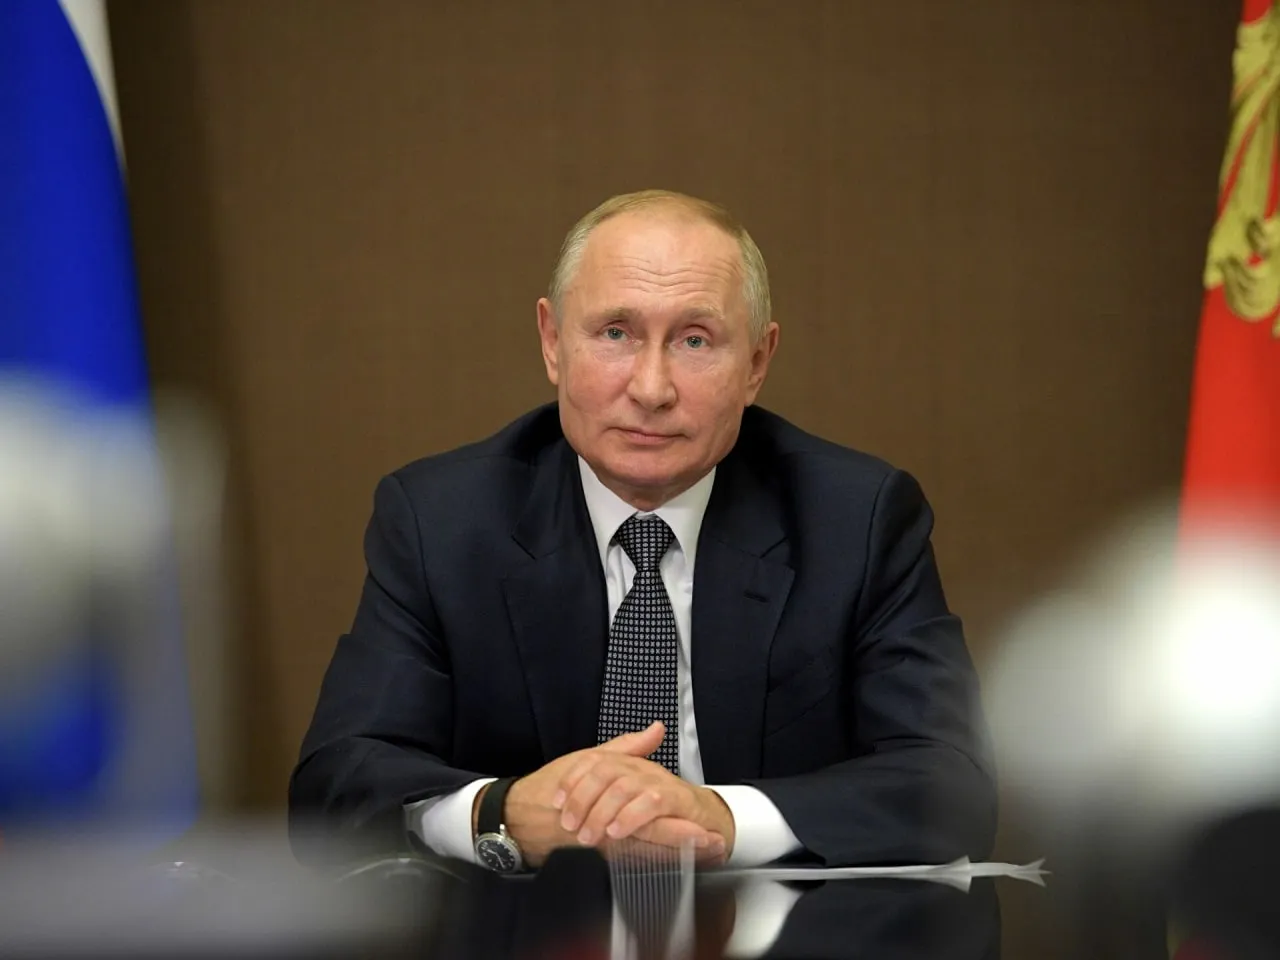 
											
											Putin islomiy mamlakatlarni global muammolarni hal qilishda Rossiyaning anʼanaviy hamkorlari deb atadi
											
											